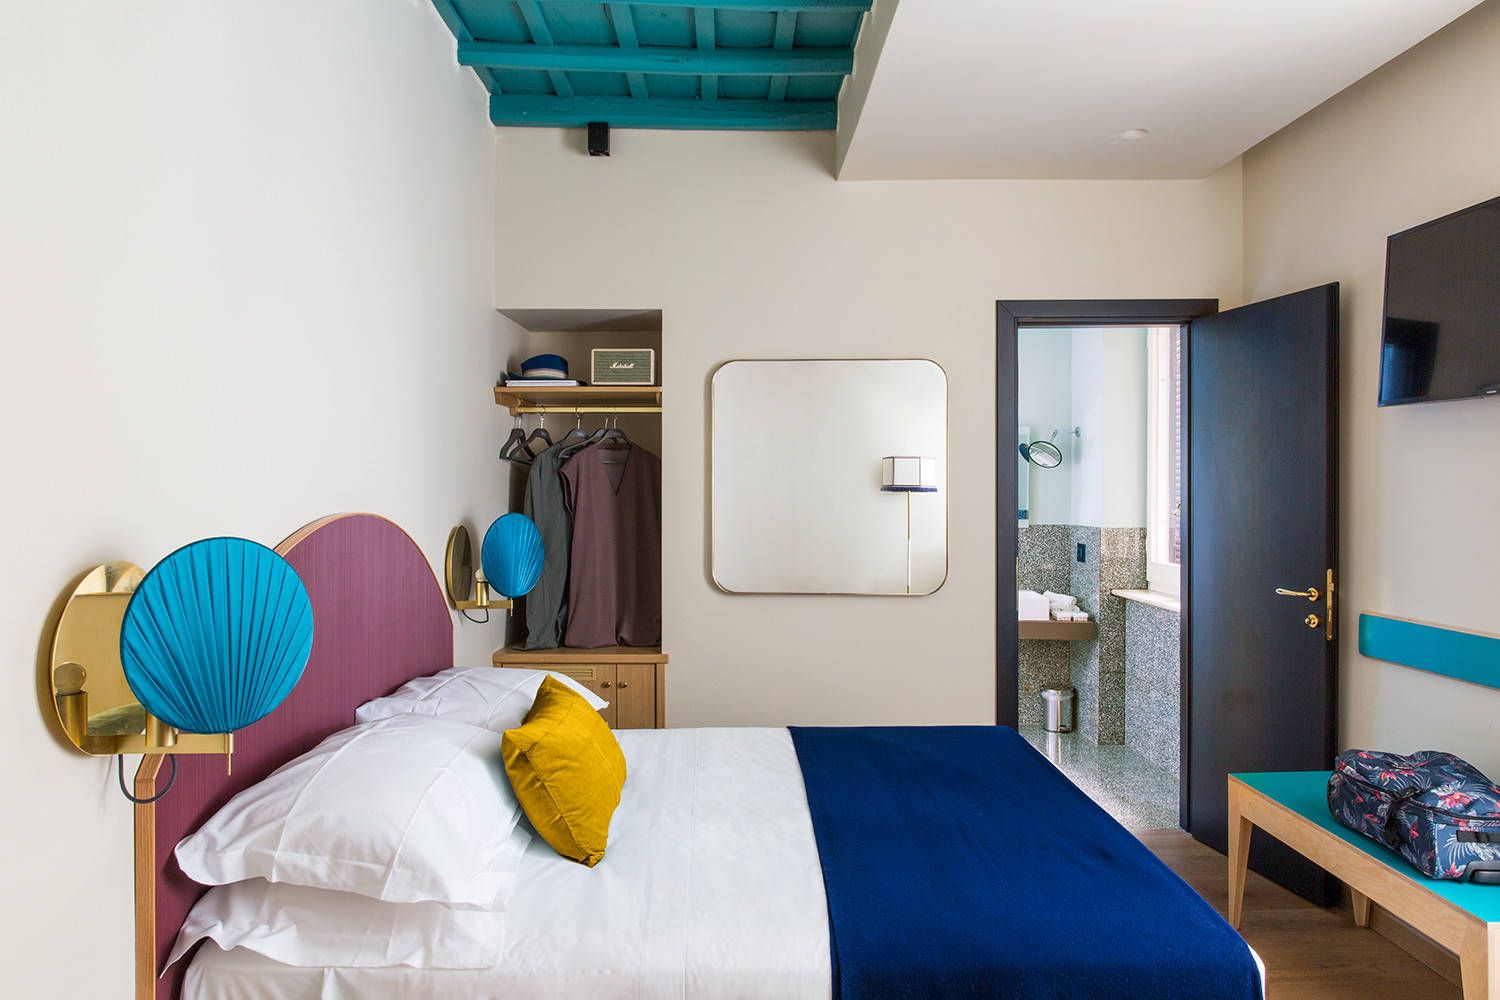 Hình ảnh phòng ngủ nhỏ với ga gối màu trắng, chăn mỏng xanh dương, đầu giường sơn tím oải hương, bàn cuối giường xanhngocj lam, cạnh đó là tủ quần áo âm tường.